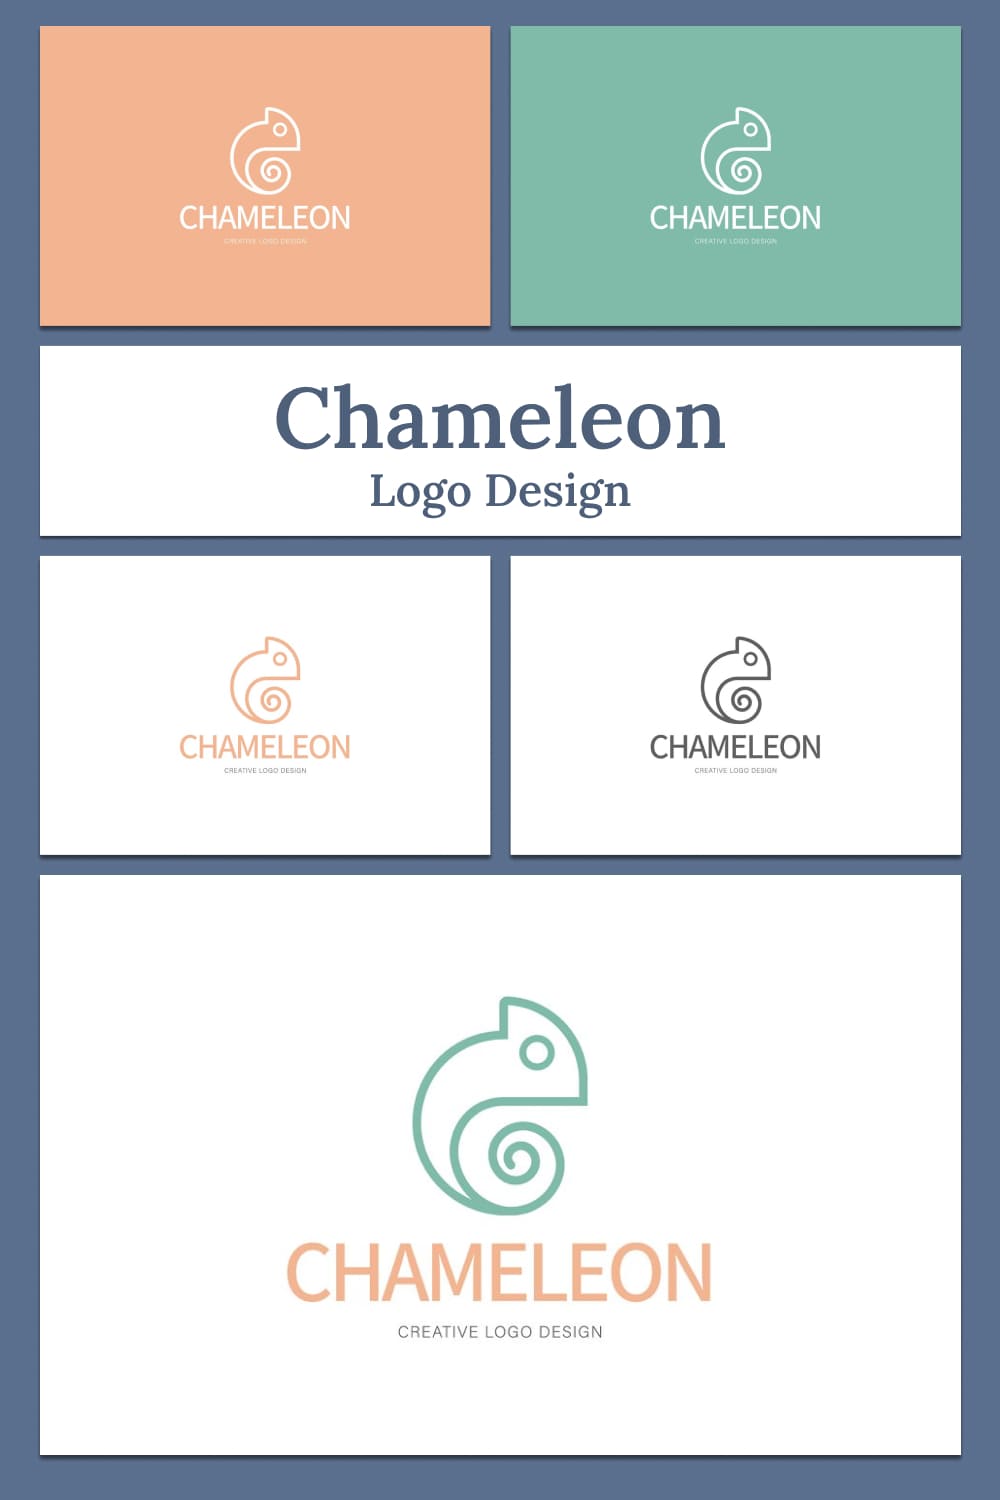 Chameleon logo design - pinterest image preview.